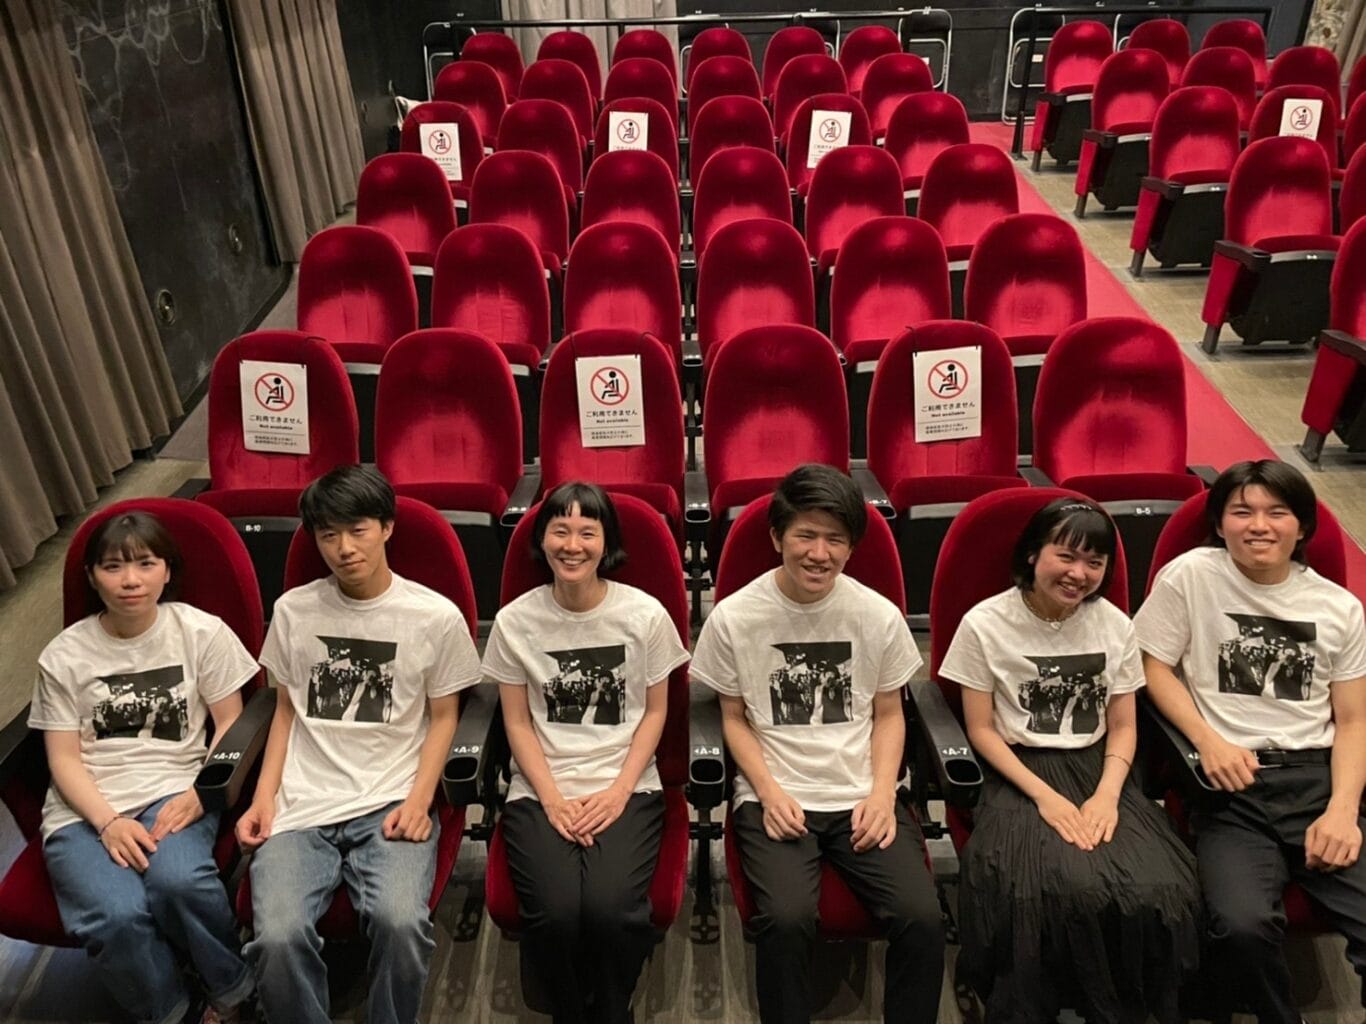 関西のミニシアターの魅力を発信する学生団体「映画チア部」が、シネ・ヌーヴォ支援Tシャツの販売を開始。